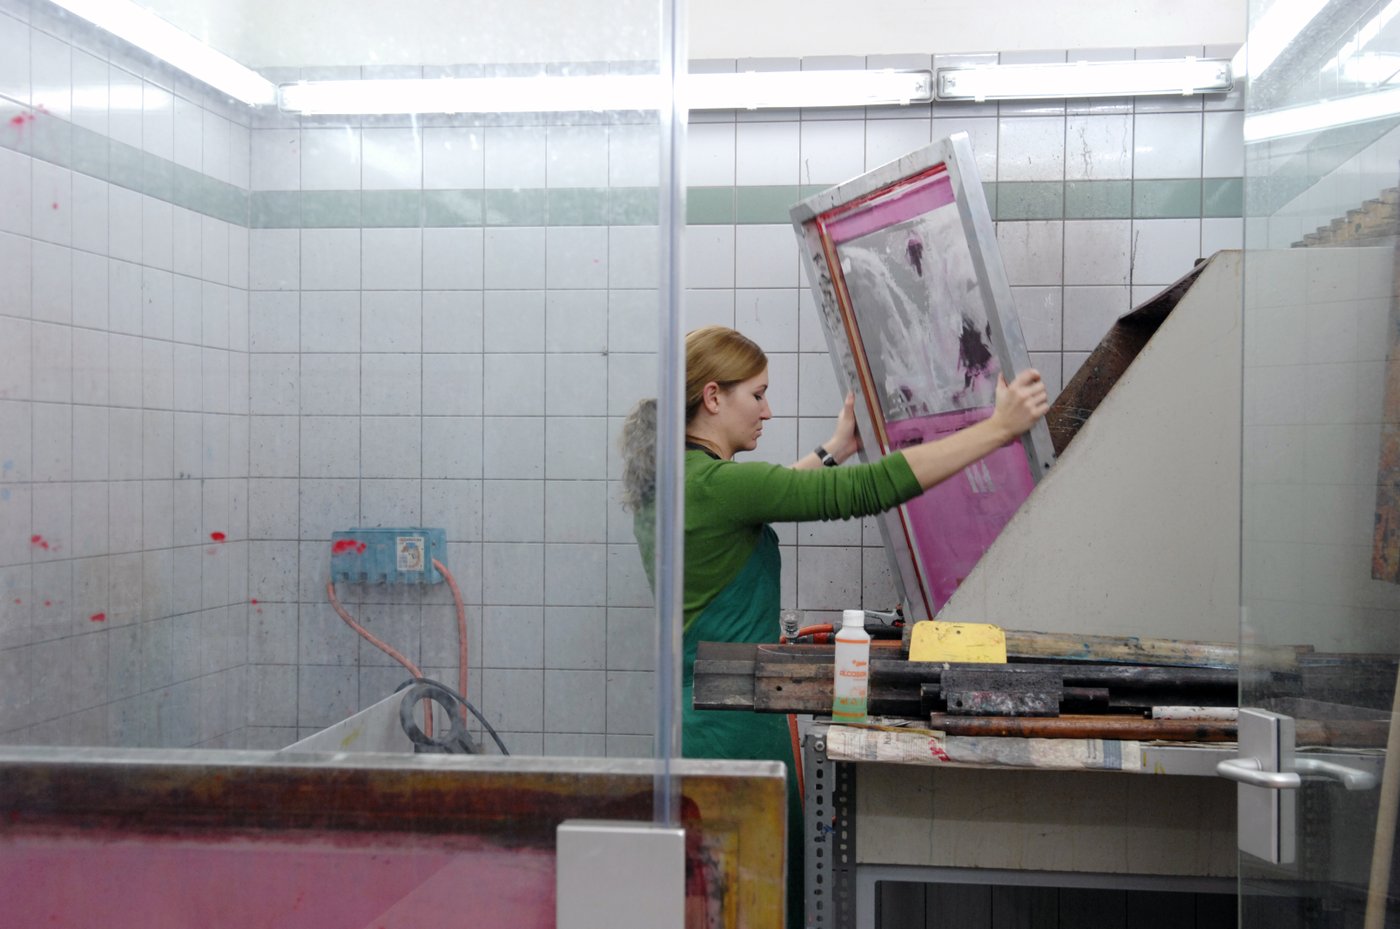 Eine Studentin arbeitet in der Siebdruckwerkstatt. Sie hat eine grüne Schürze an und hält den Siebdruckrahmen hoch. Die Wände sind gekachelt und teilweise verglast. Es liegen allerlei Gerätschaften herum.